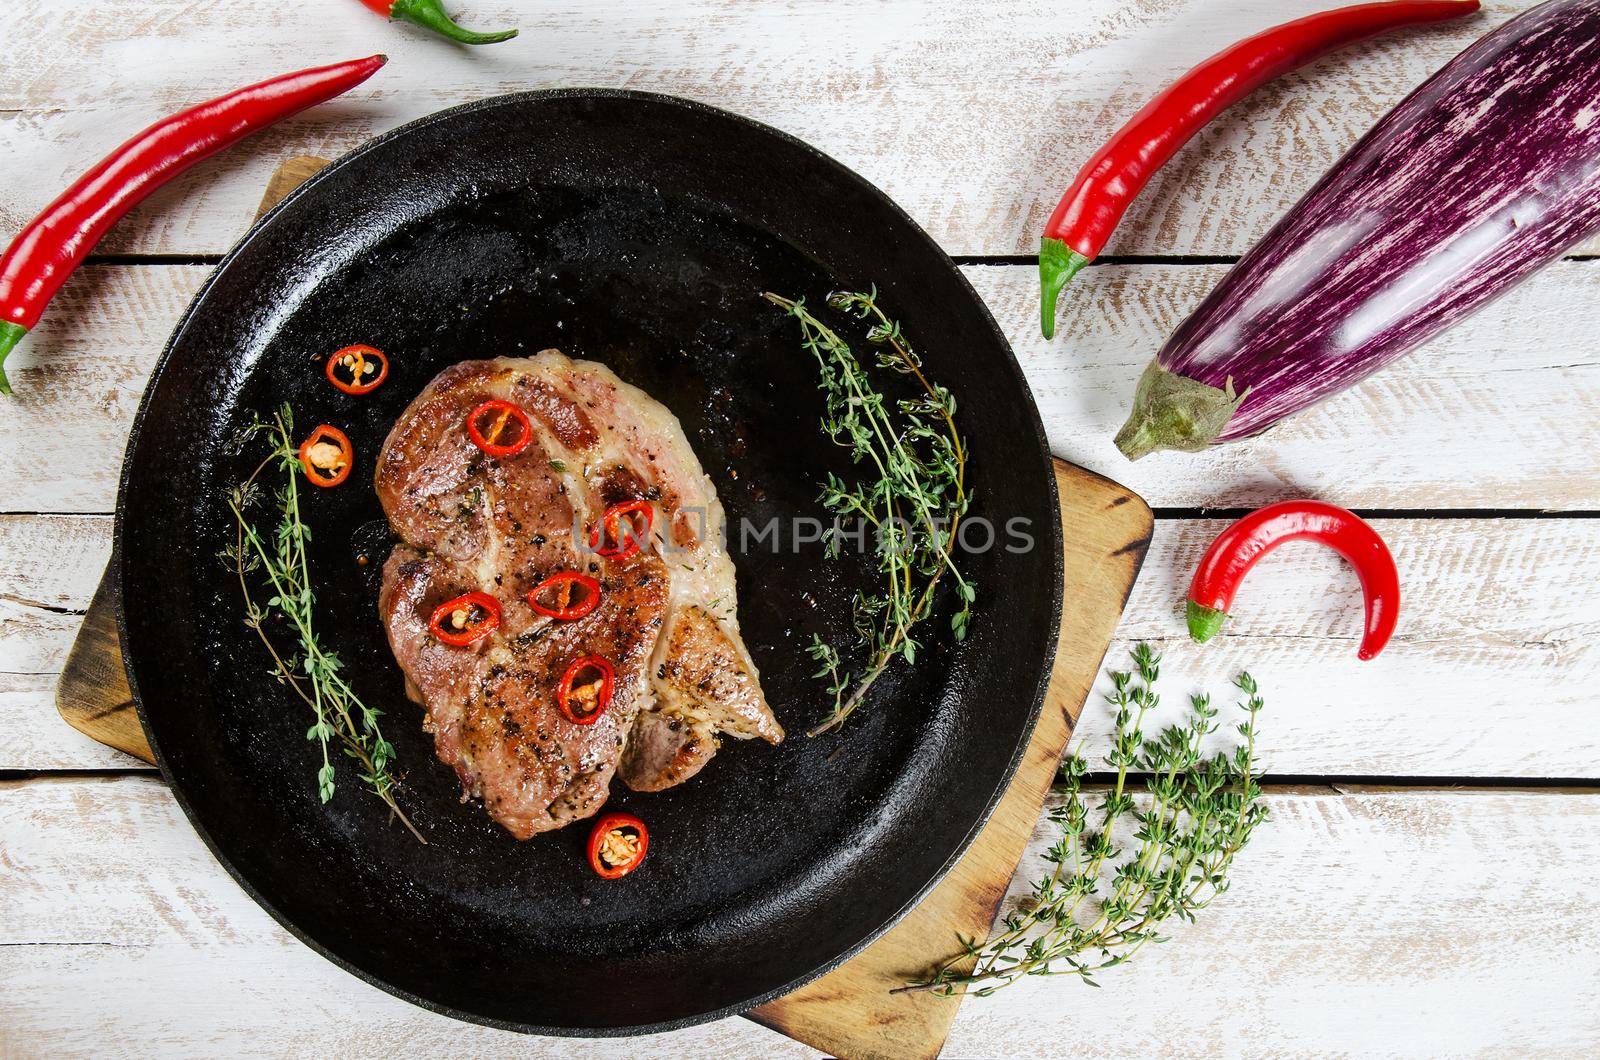 pork steak with chili by Jyliana